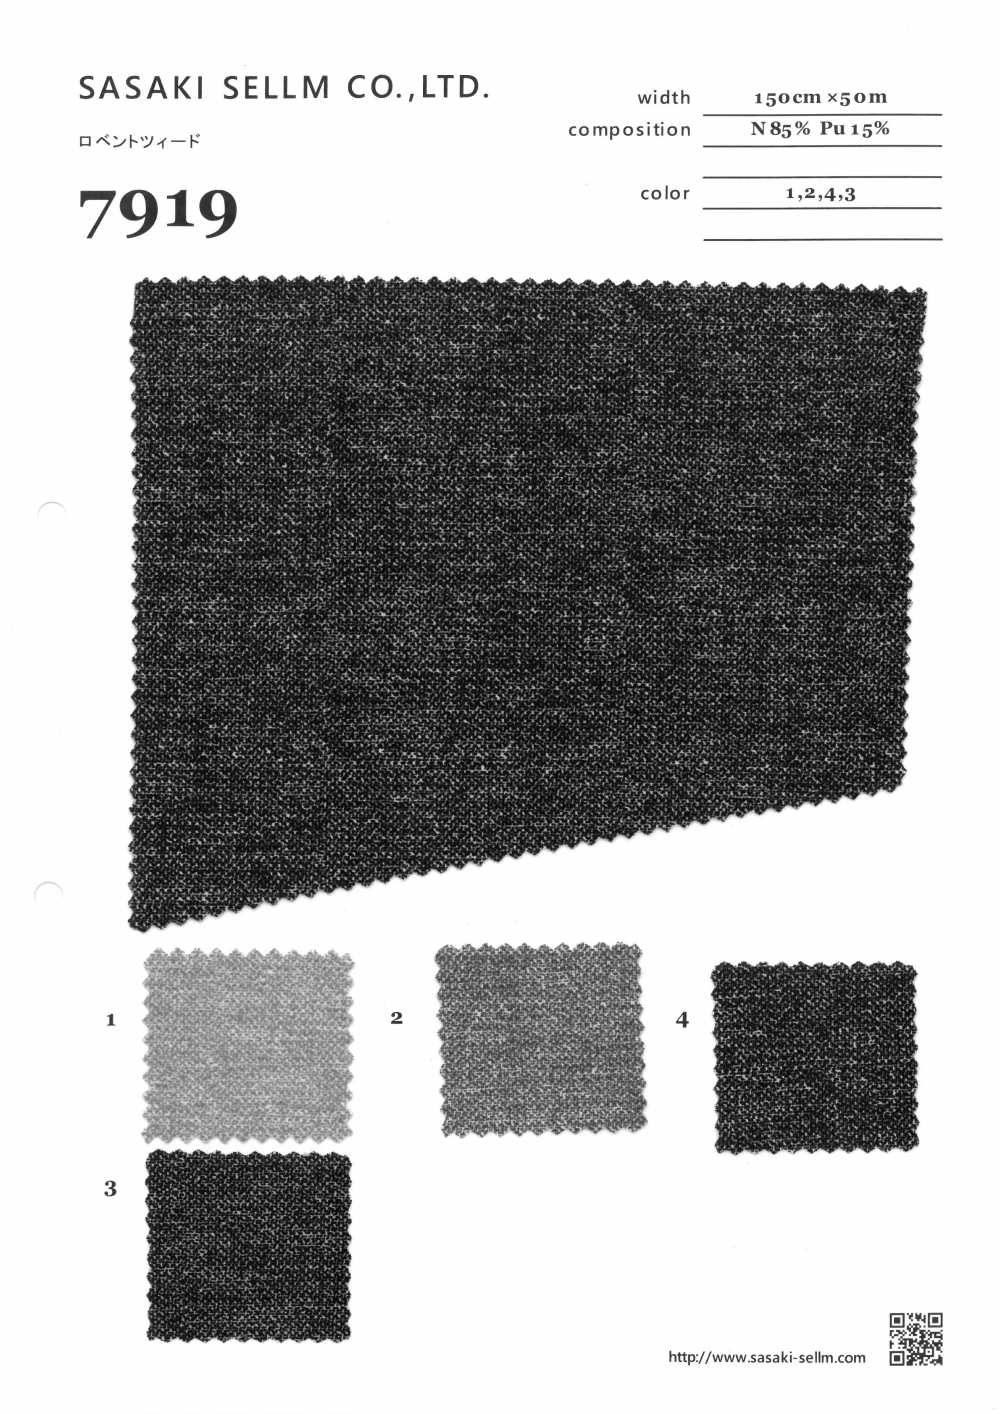 7919 Lovent Tweed[Textile / Fabric] SASAKISELLM